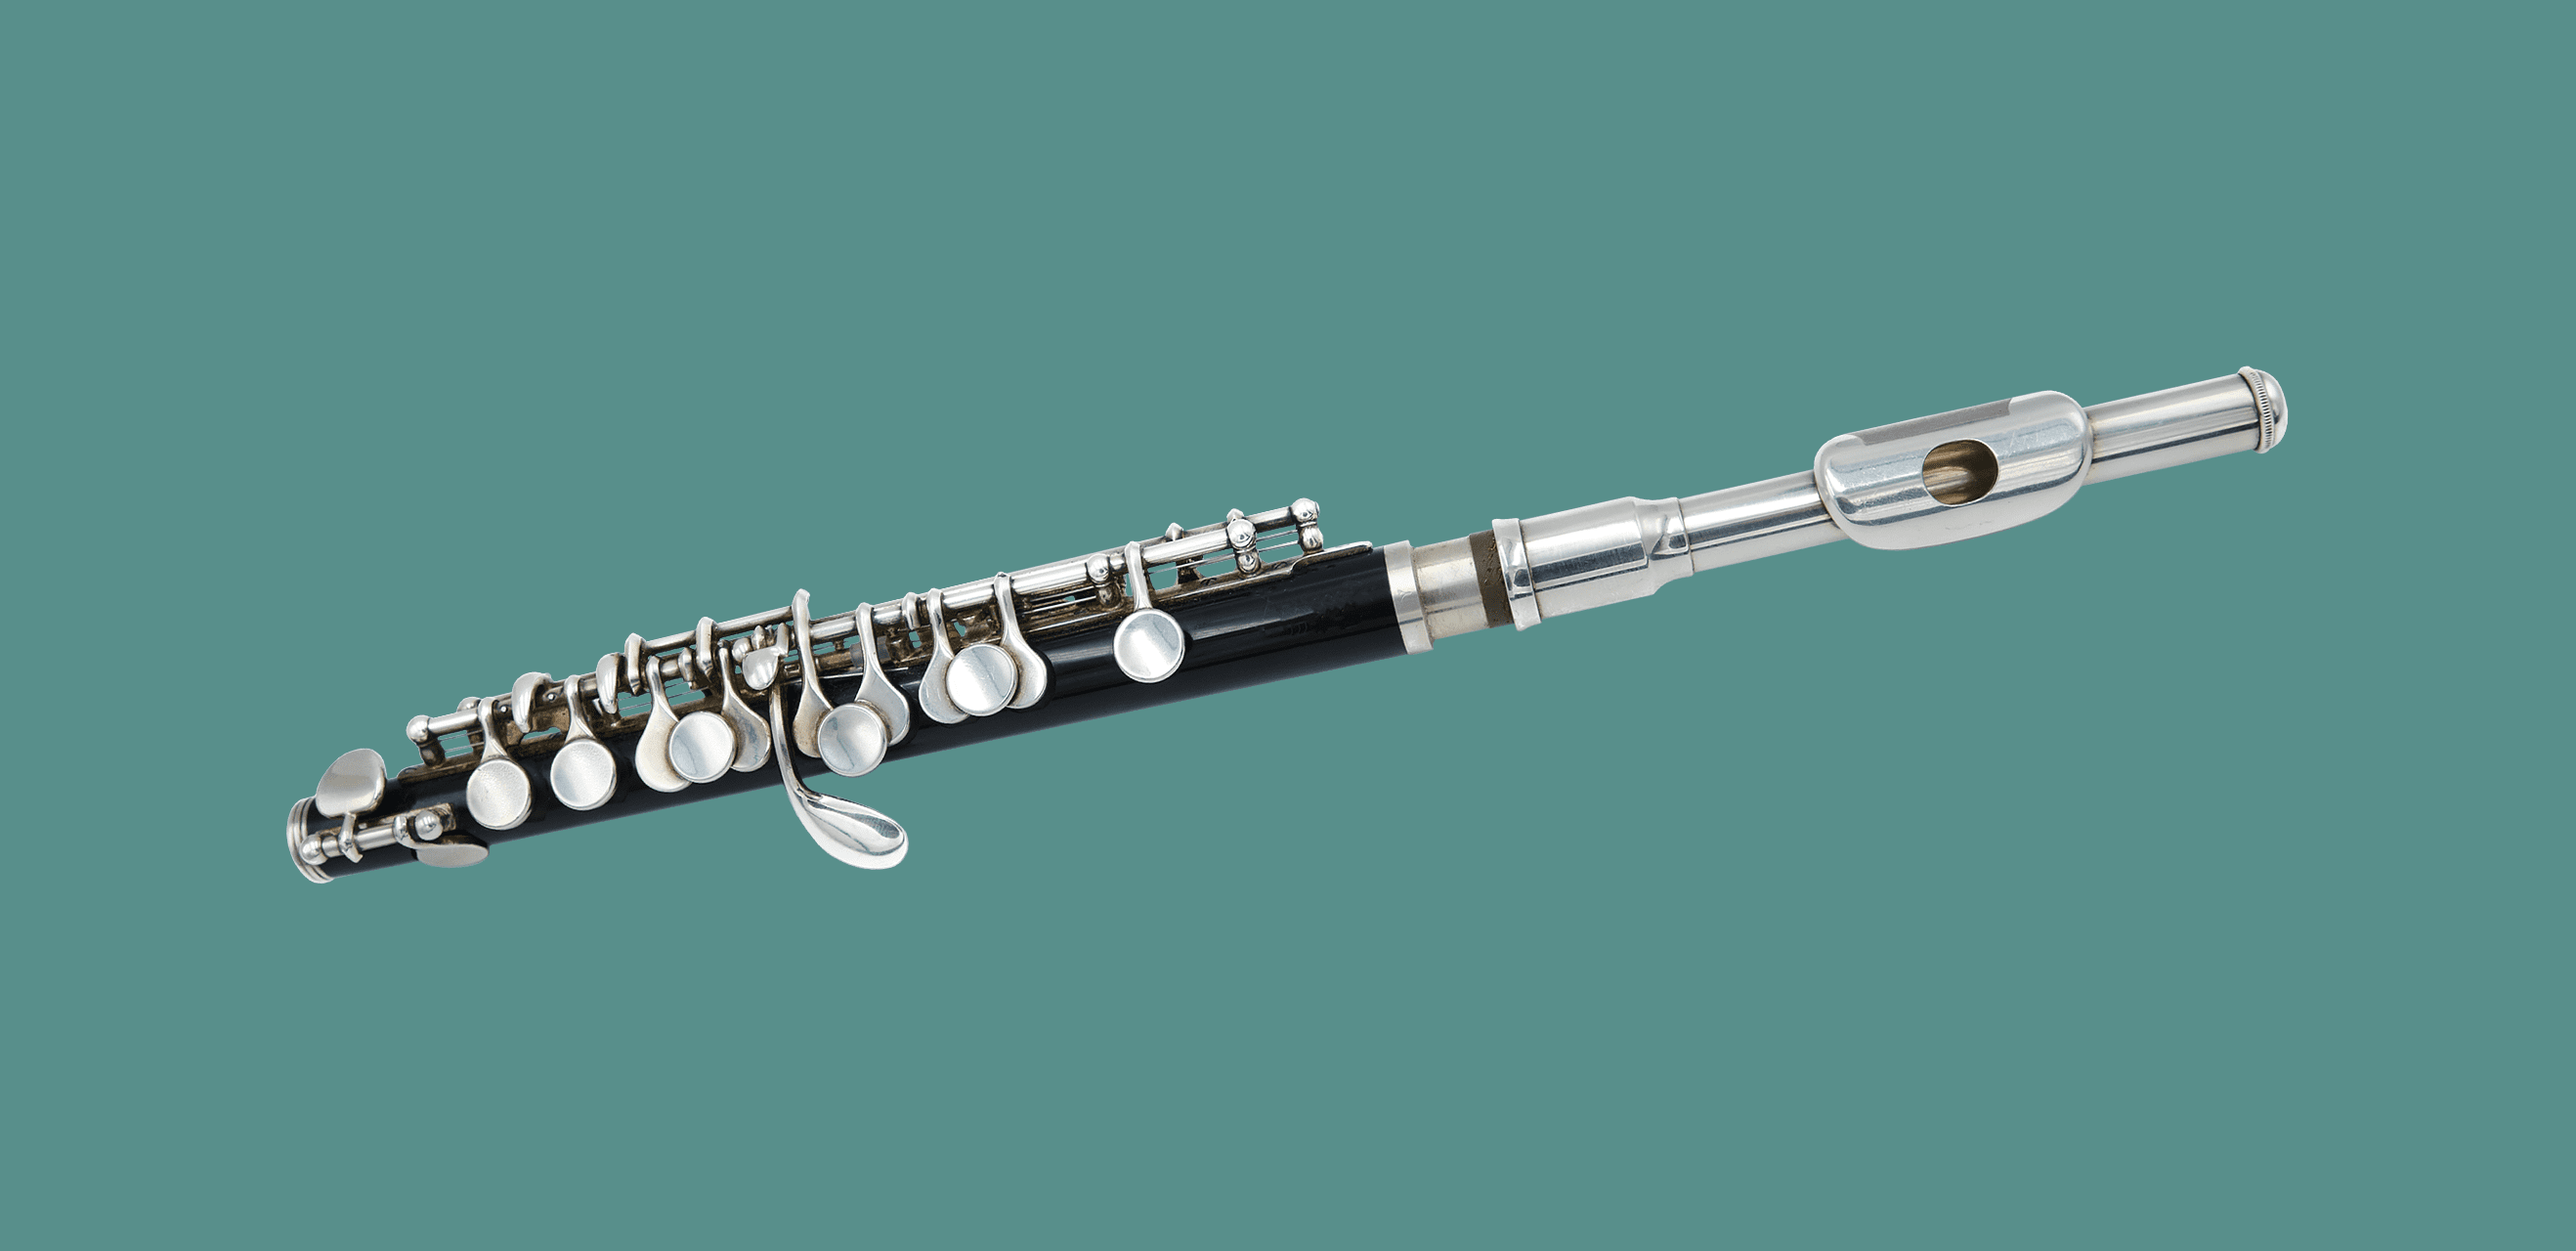 piccolo and flute